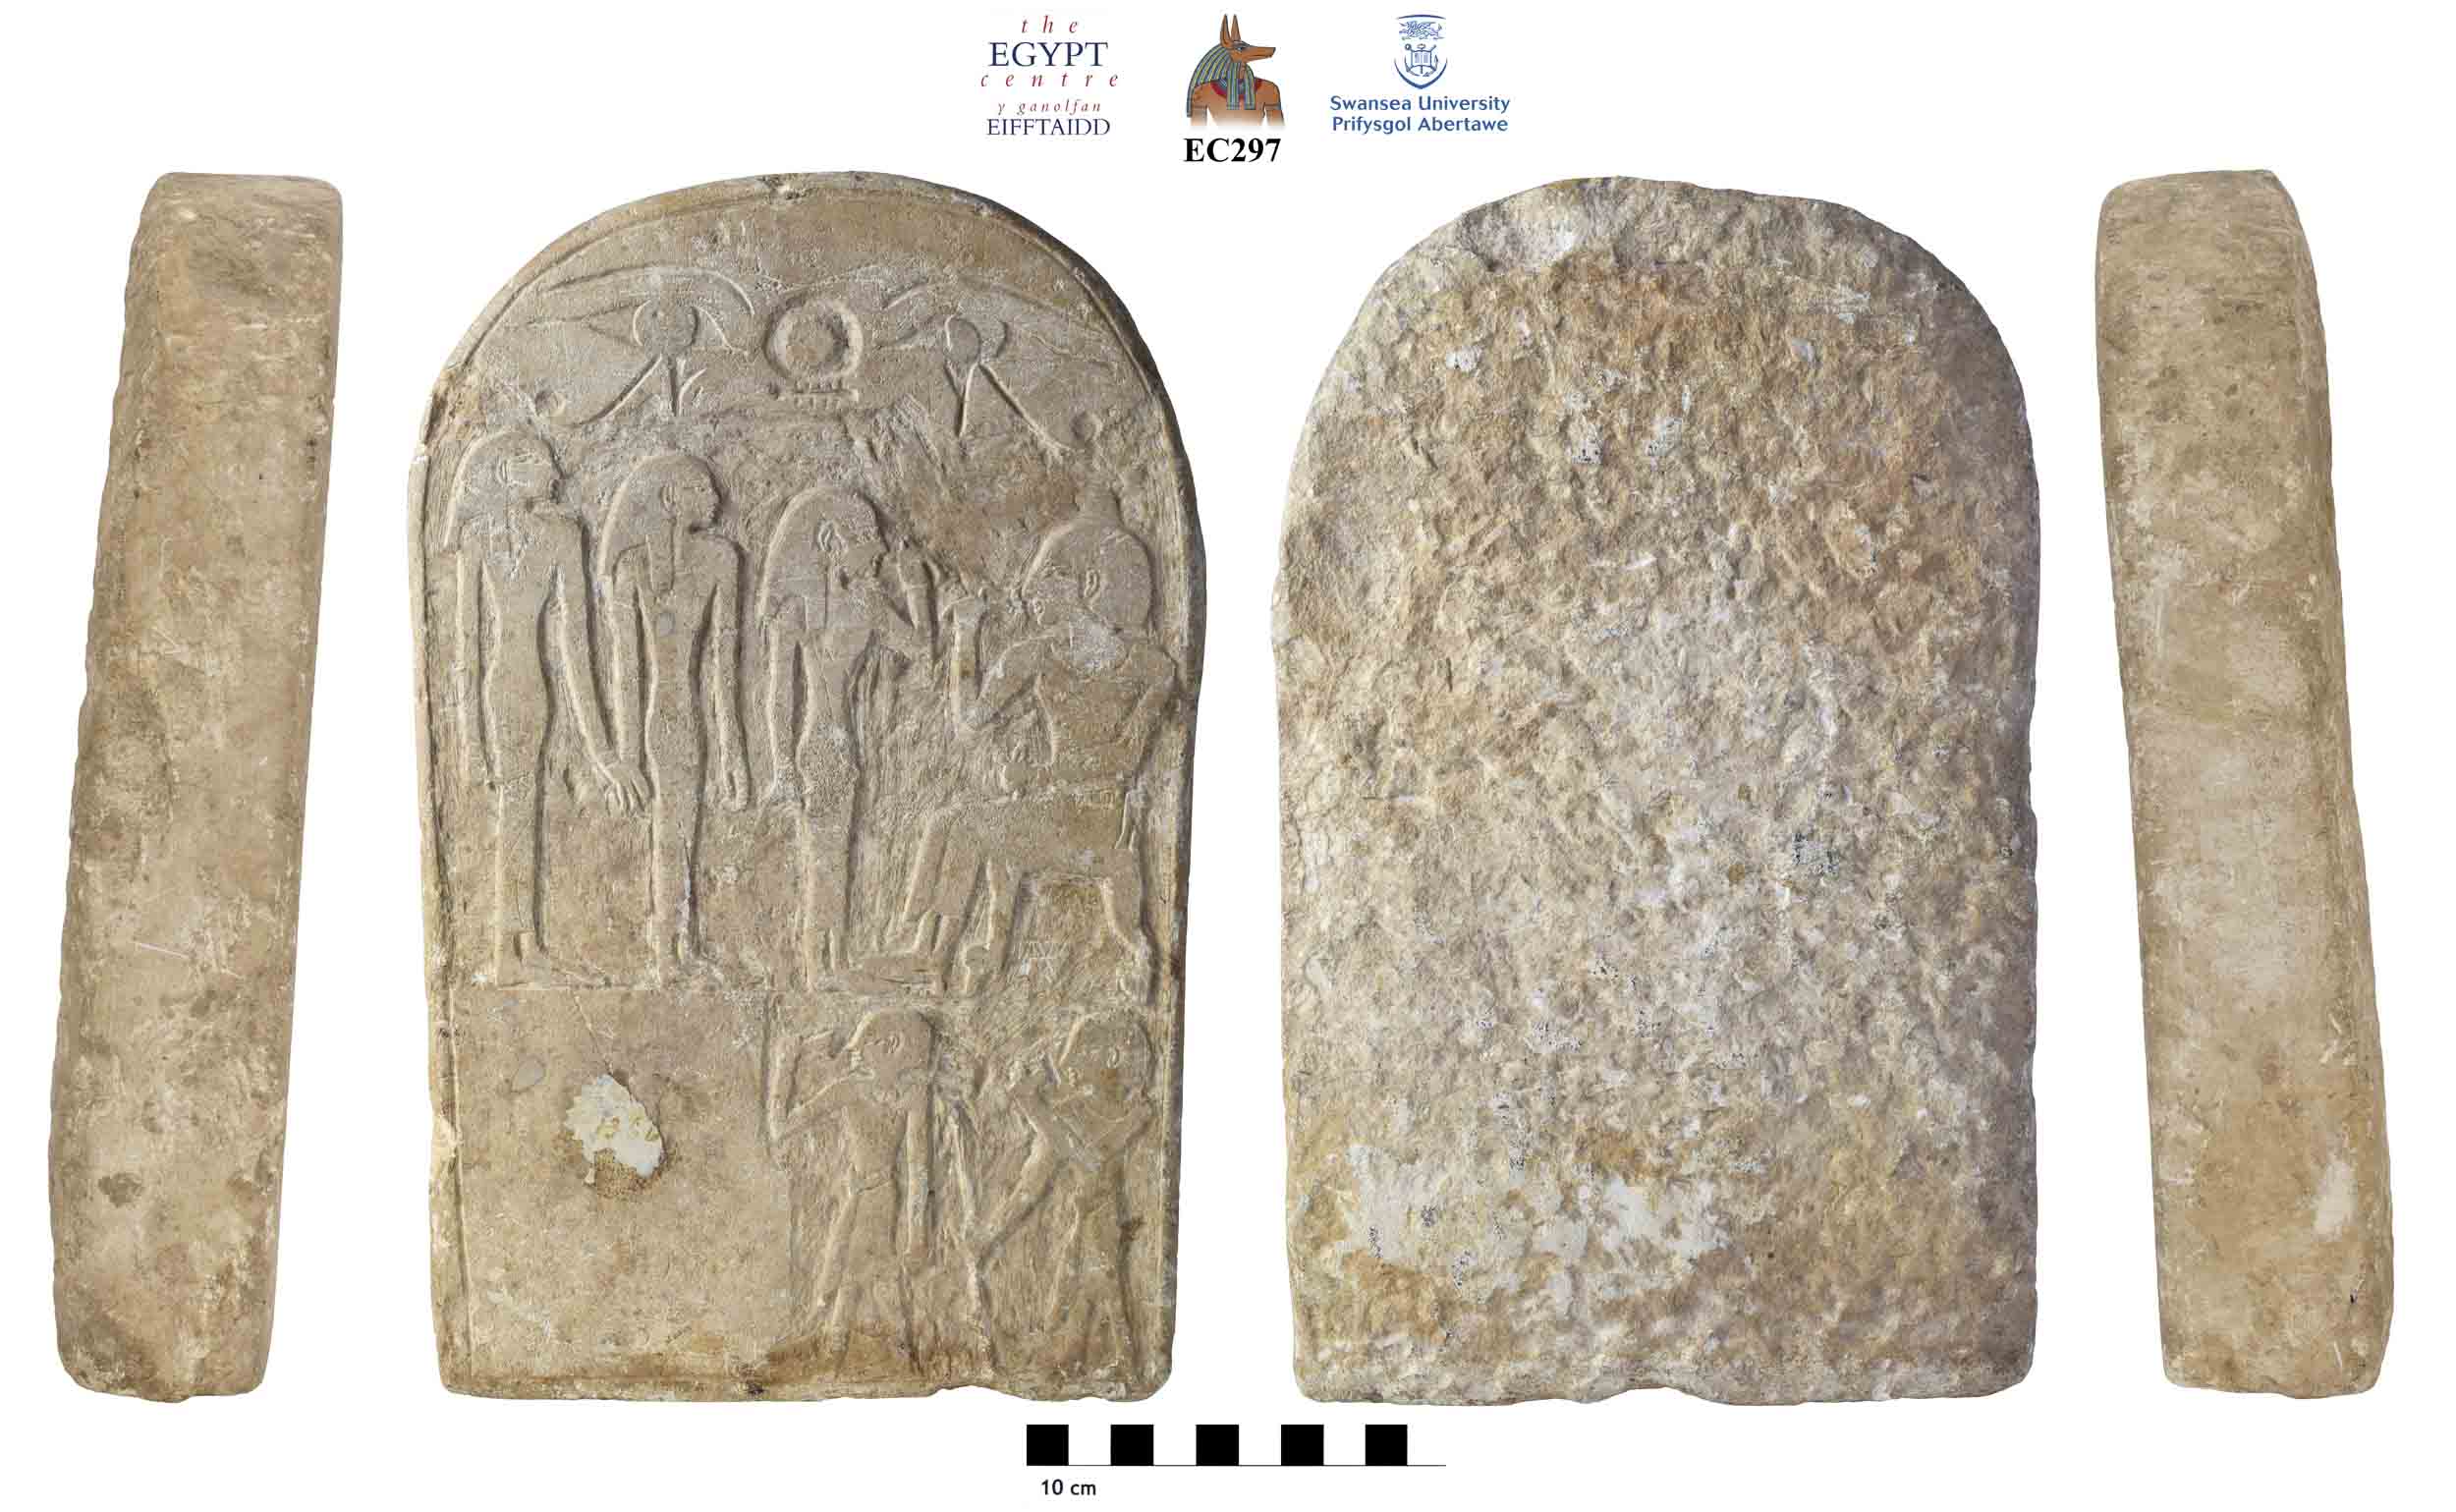 Image for: Unfinished stone stela